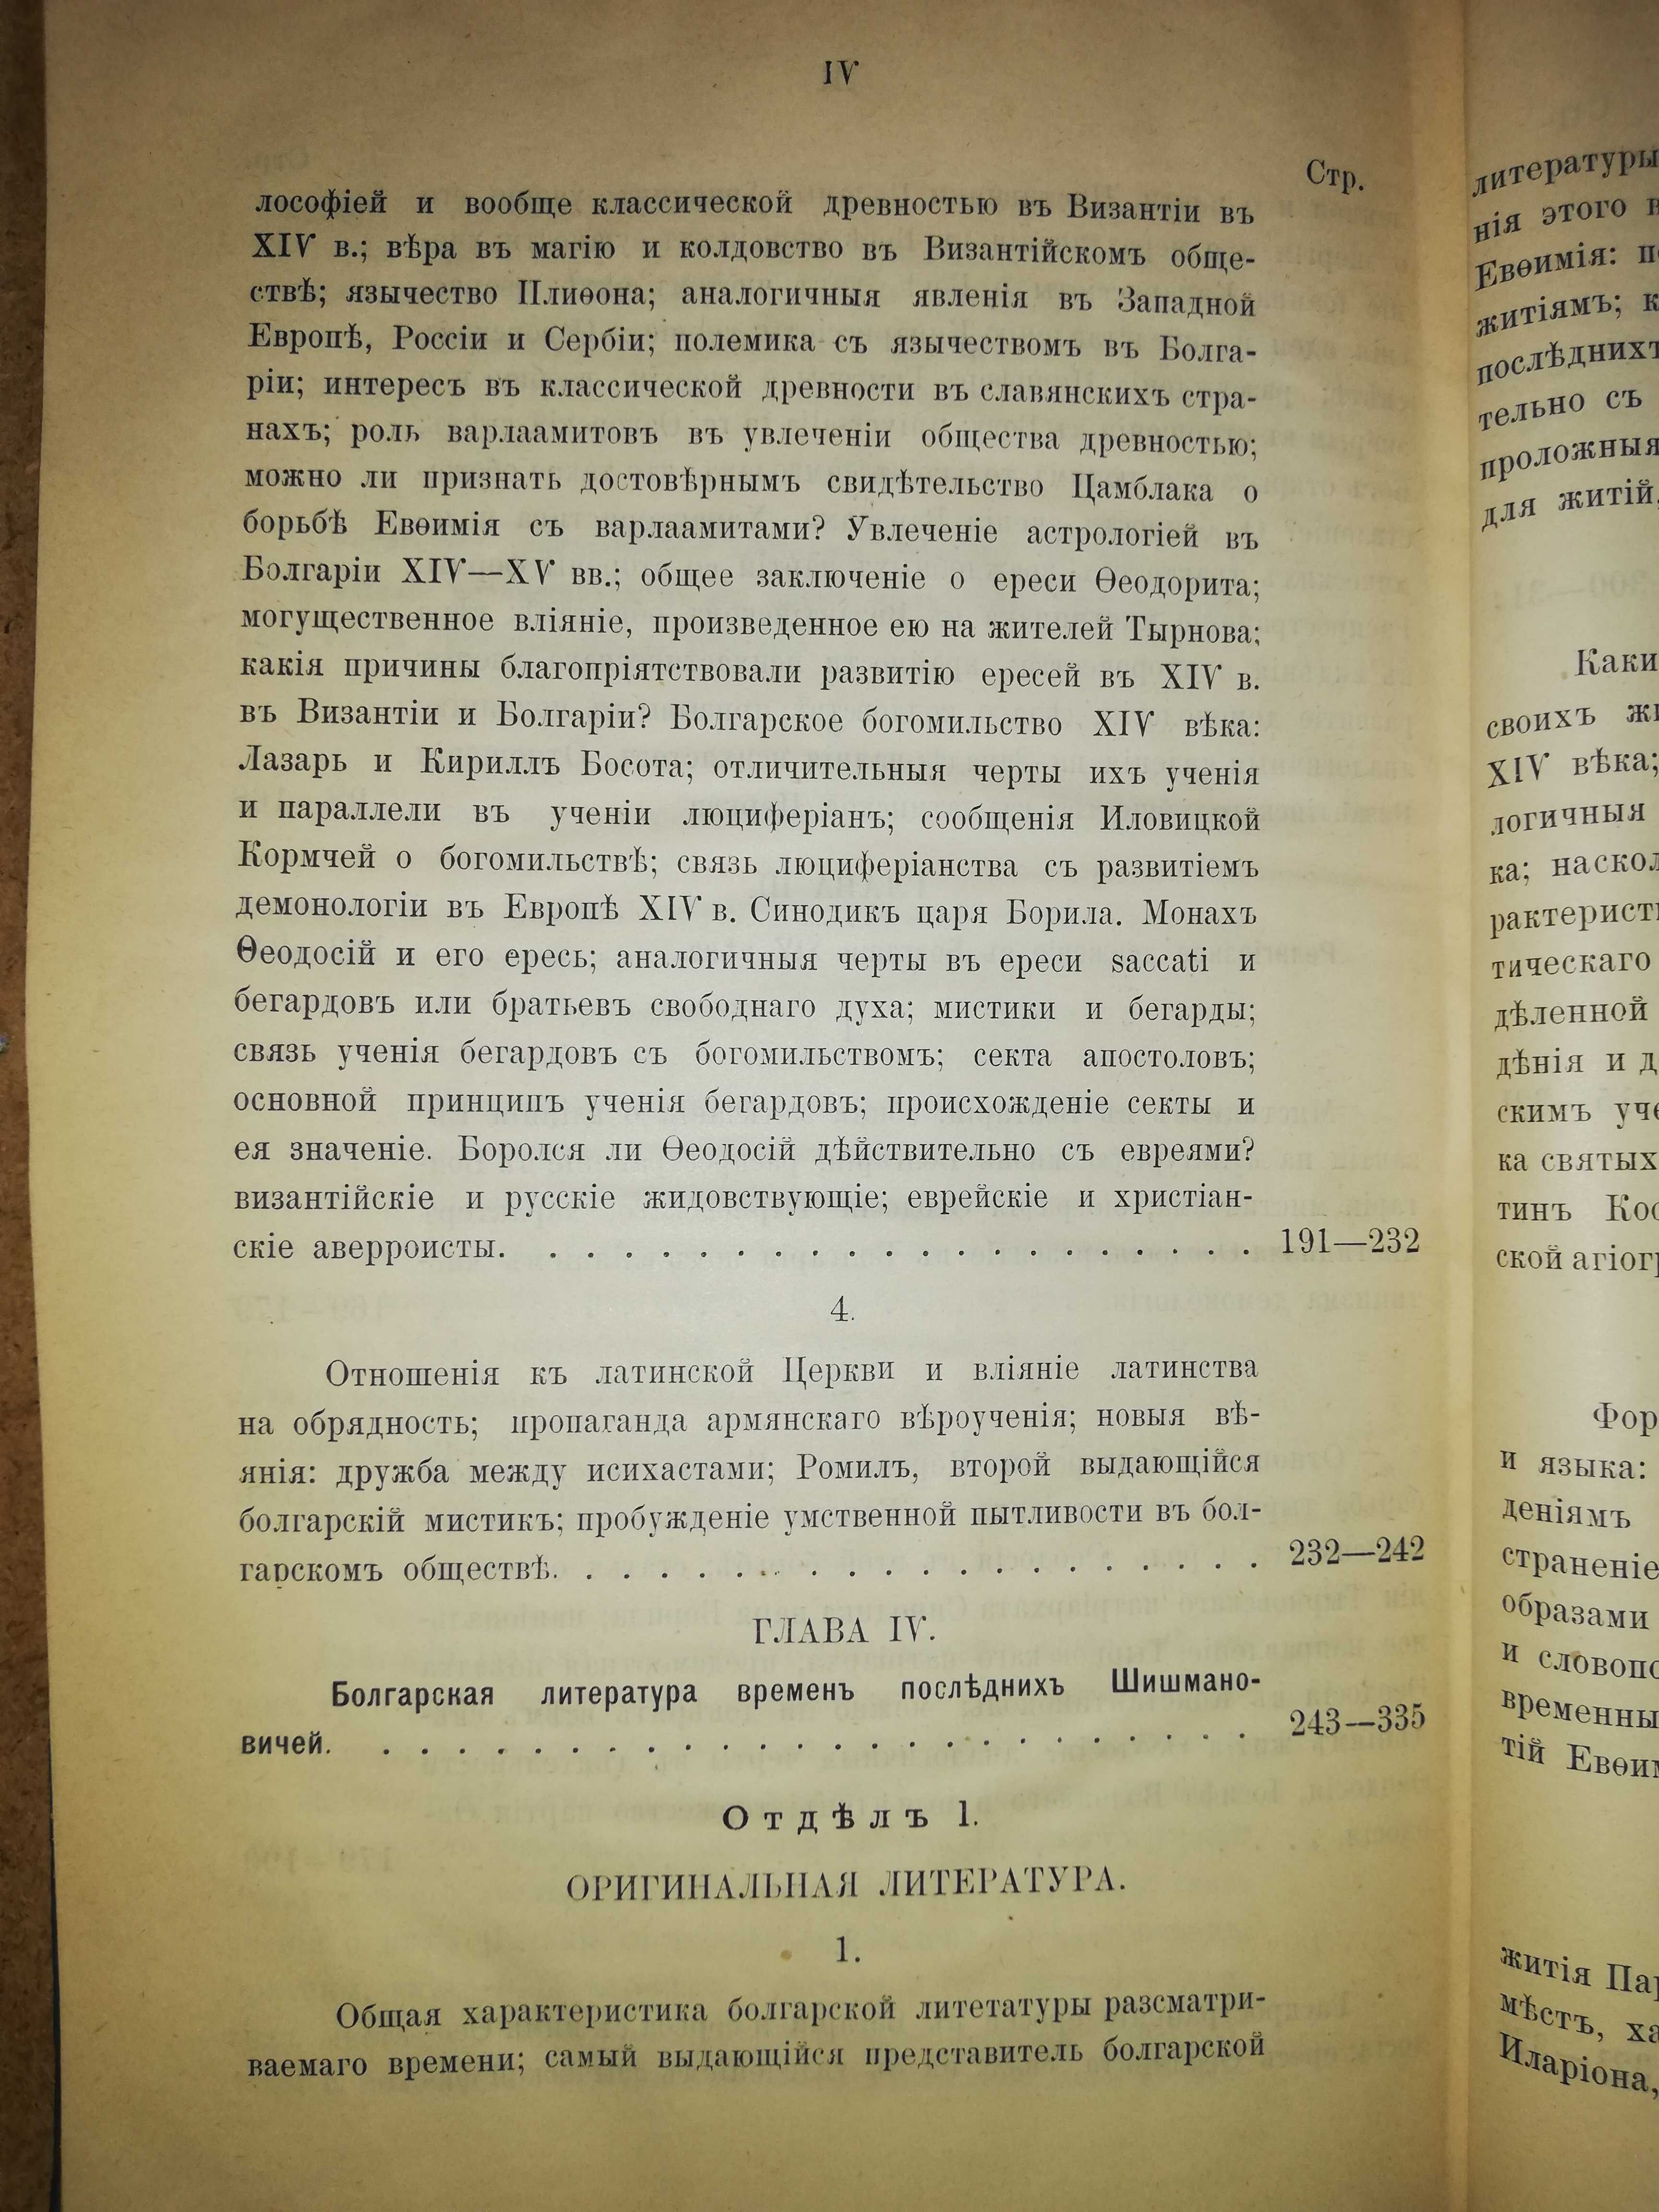 Радченко ''Религиозное и литературное движение в Болгарии'' 1.898г.